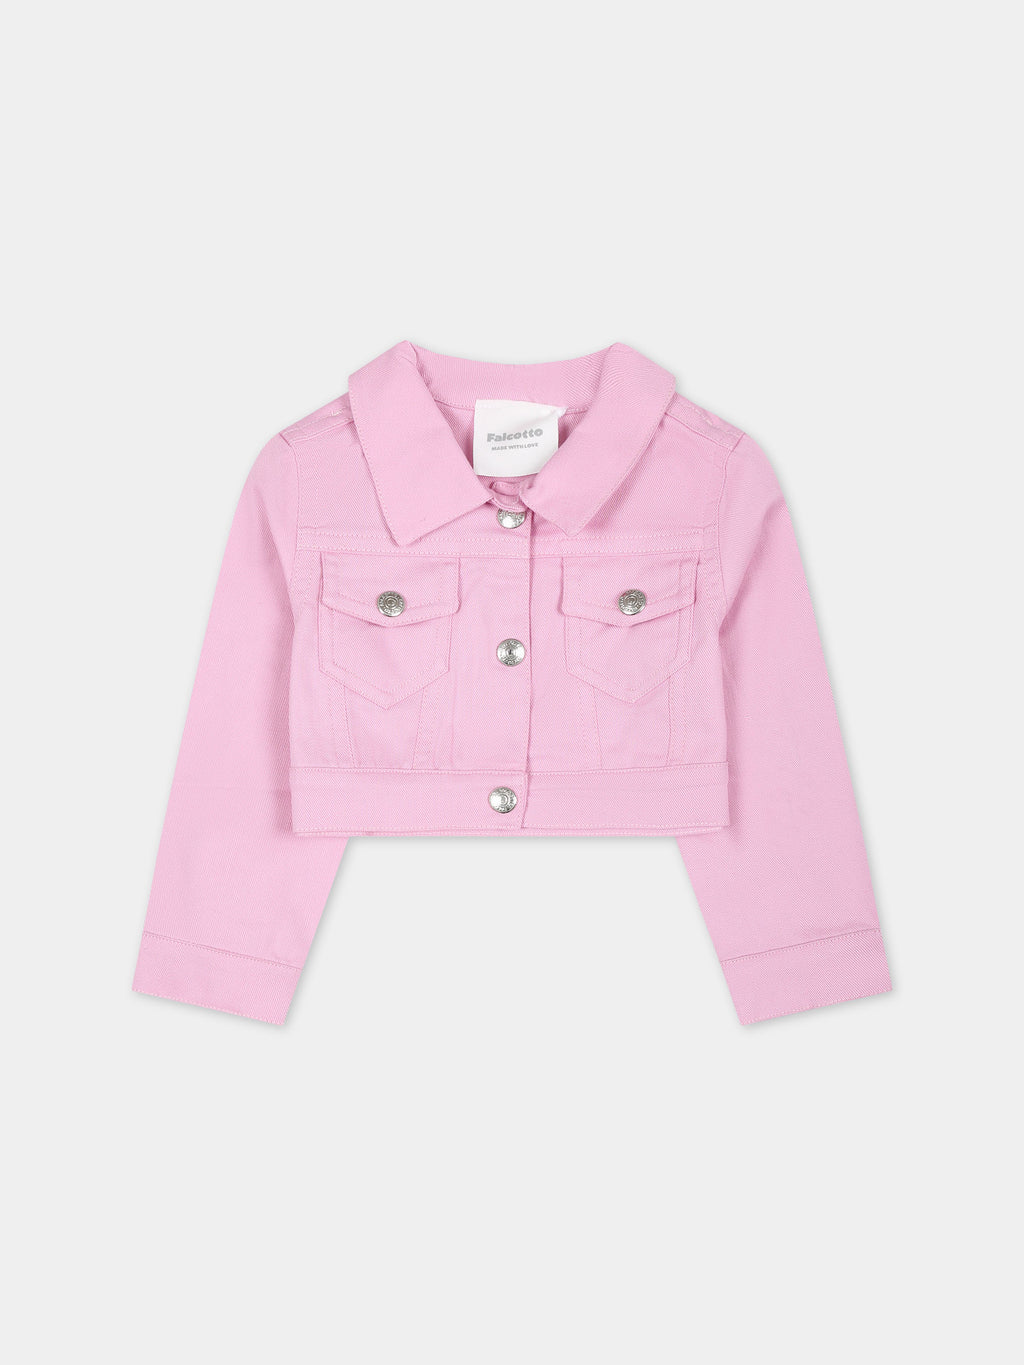 Veste rose pour bébé fille avec logo